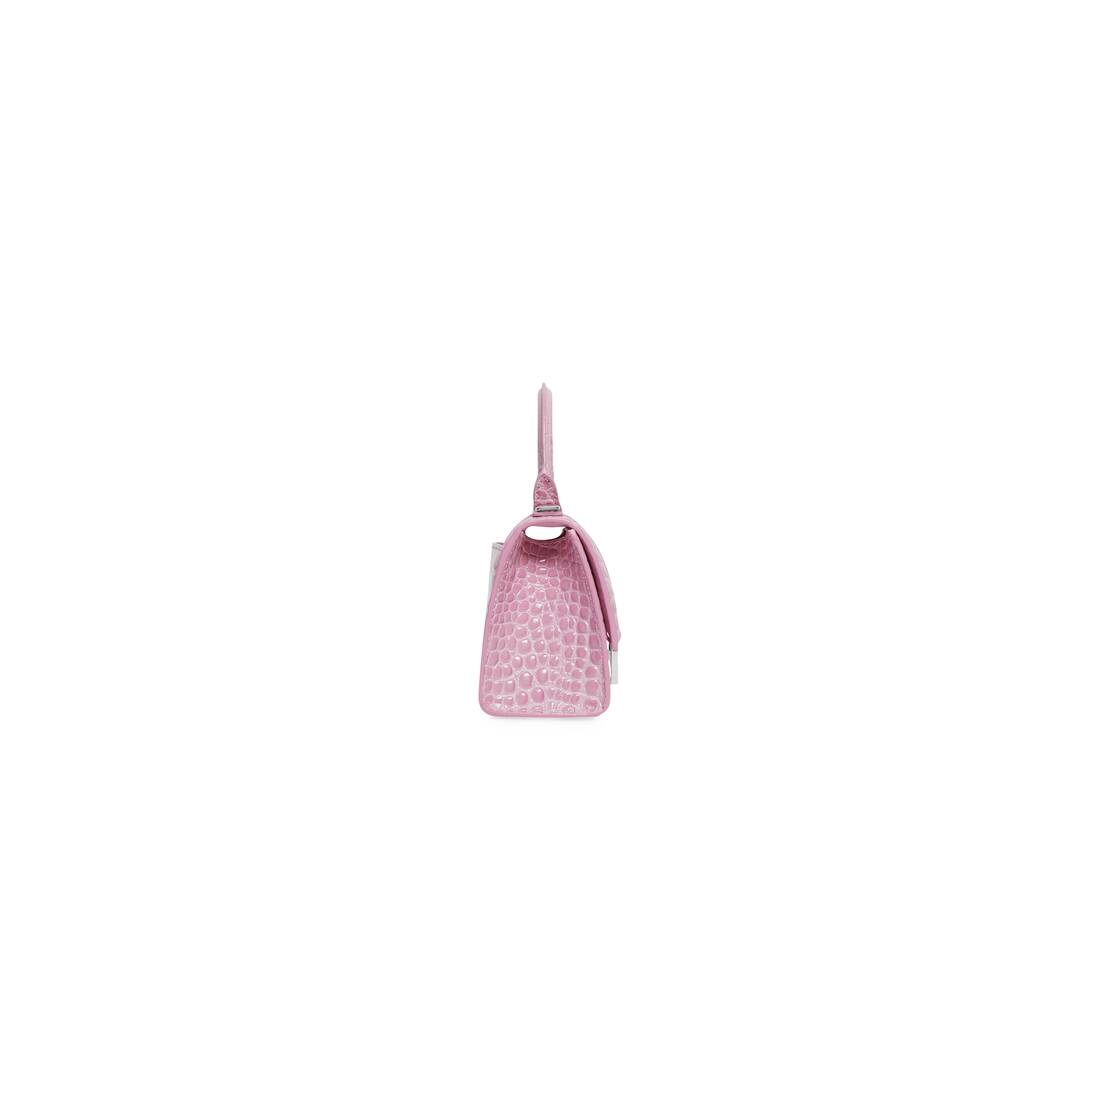 Women's Hourglass Xs Handbag Crocodile Embossed in Light Pink 